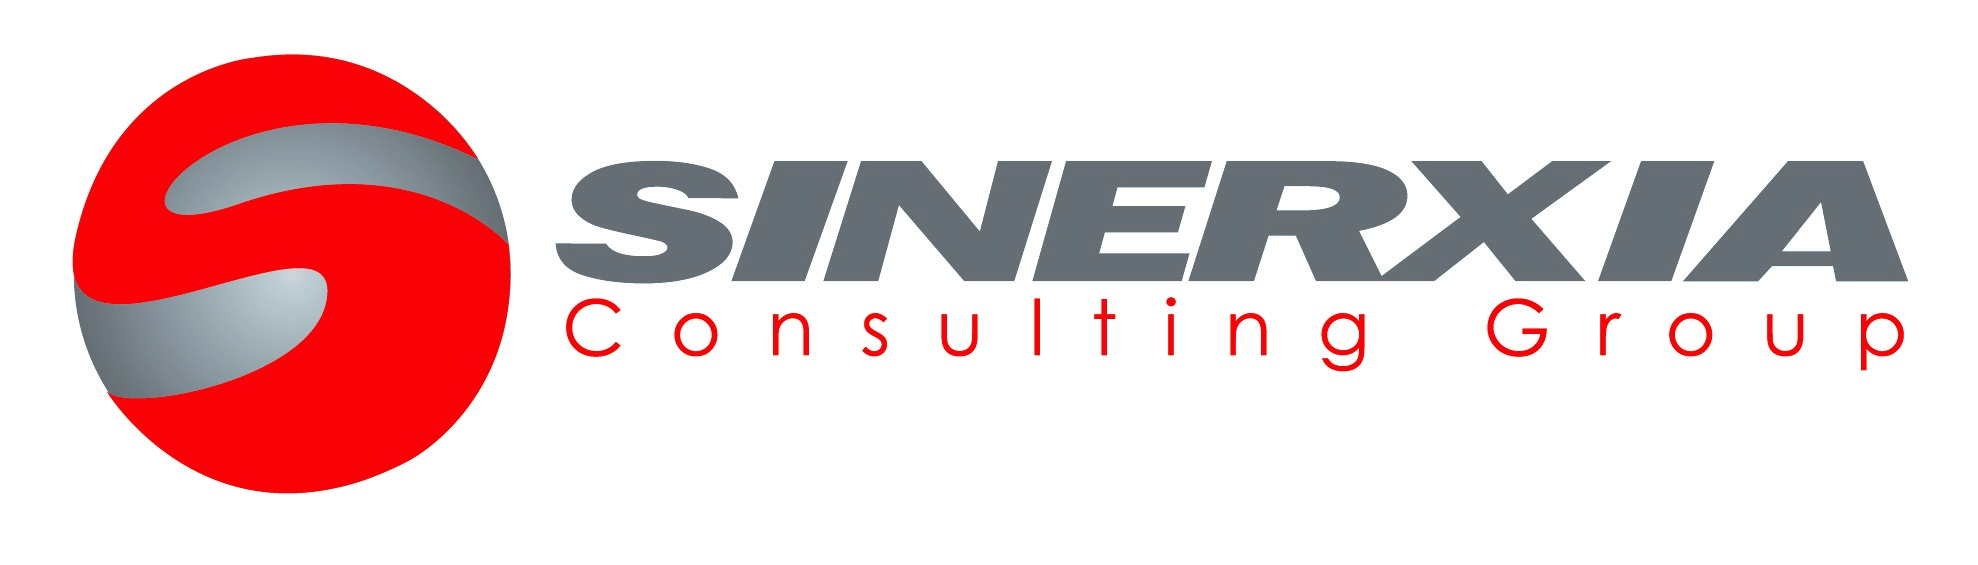 logo1-Sinerxia